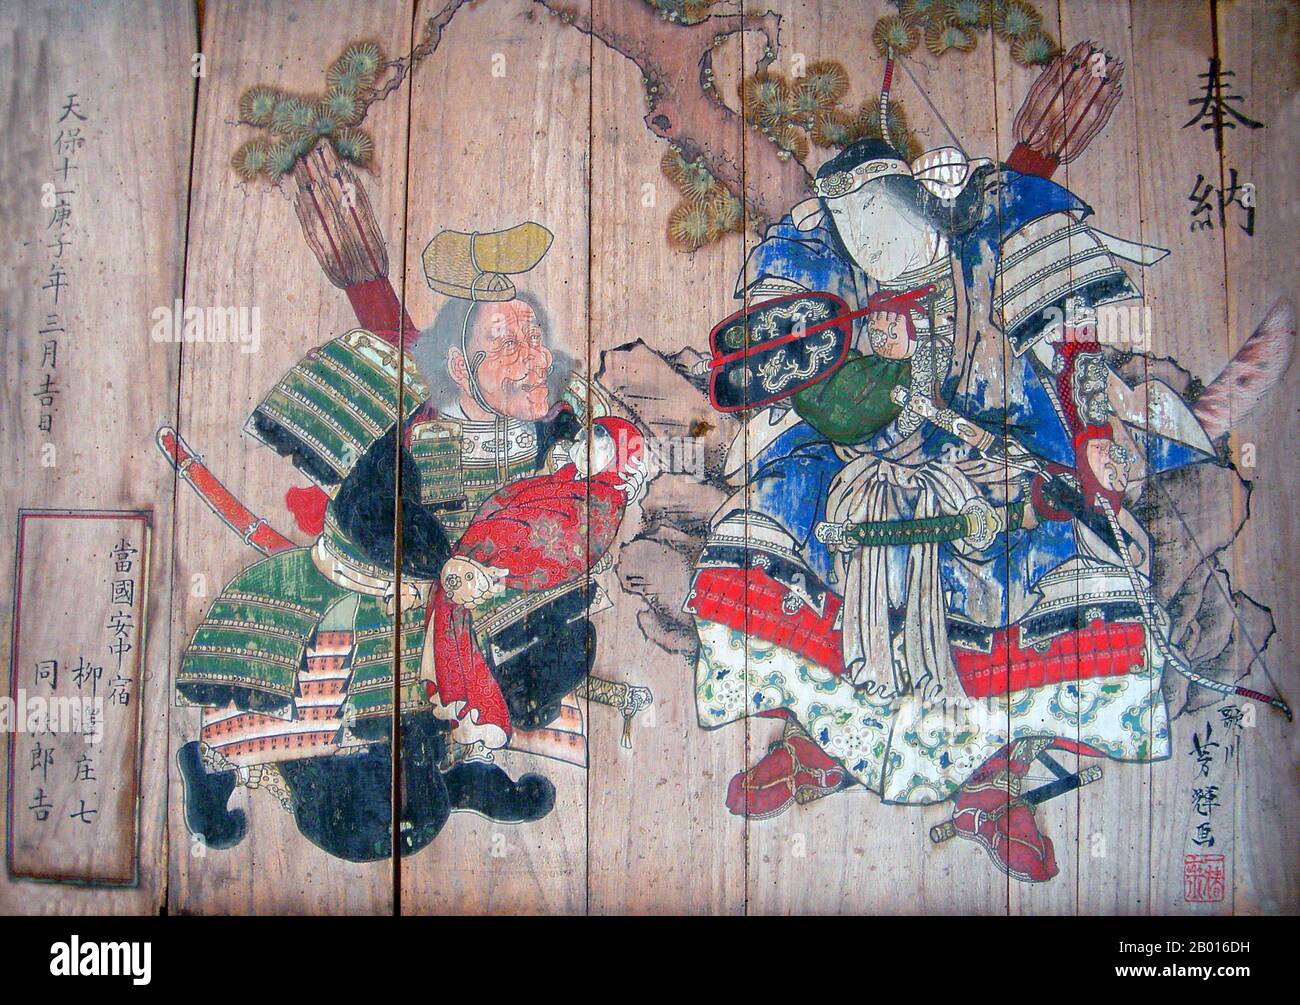 Japon: Empress Jingu (c.169-269 ce) être montré son fils, le futur empereur Ojin.Peinture sur des planches de bois par Utagawa Yoshiteru (1809-1891), 1840.L'impératrice Jingū (Jingū tennō), également connue sous le nom d'impératrice-consort Jingū, était une impératrice japonaise légendaire.L'impératrice ou consort de l'empereur Chūai, elle a aussi servi de régente à partir du moment de la mort de son mari en 209 jusqu'à ce que son fils l'empereur Ōjin accède au trône en 269.Jusqu'à la période Meiji, Jingū était considéré comme le 15e dirigeant impérial japonais, selon l'ordre traditionnel de succession. Banque D'Images